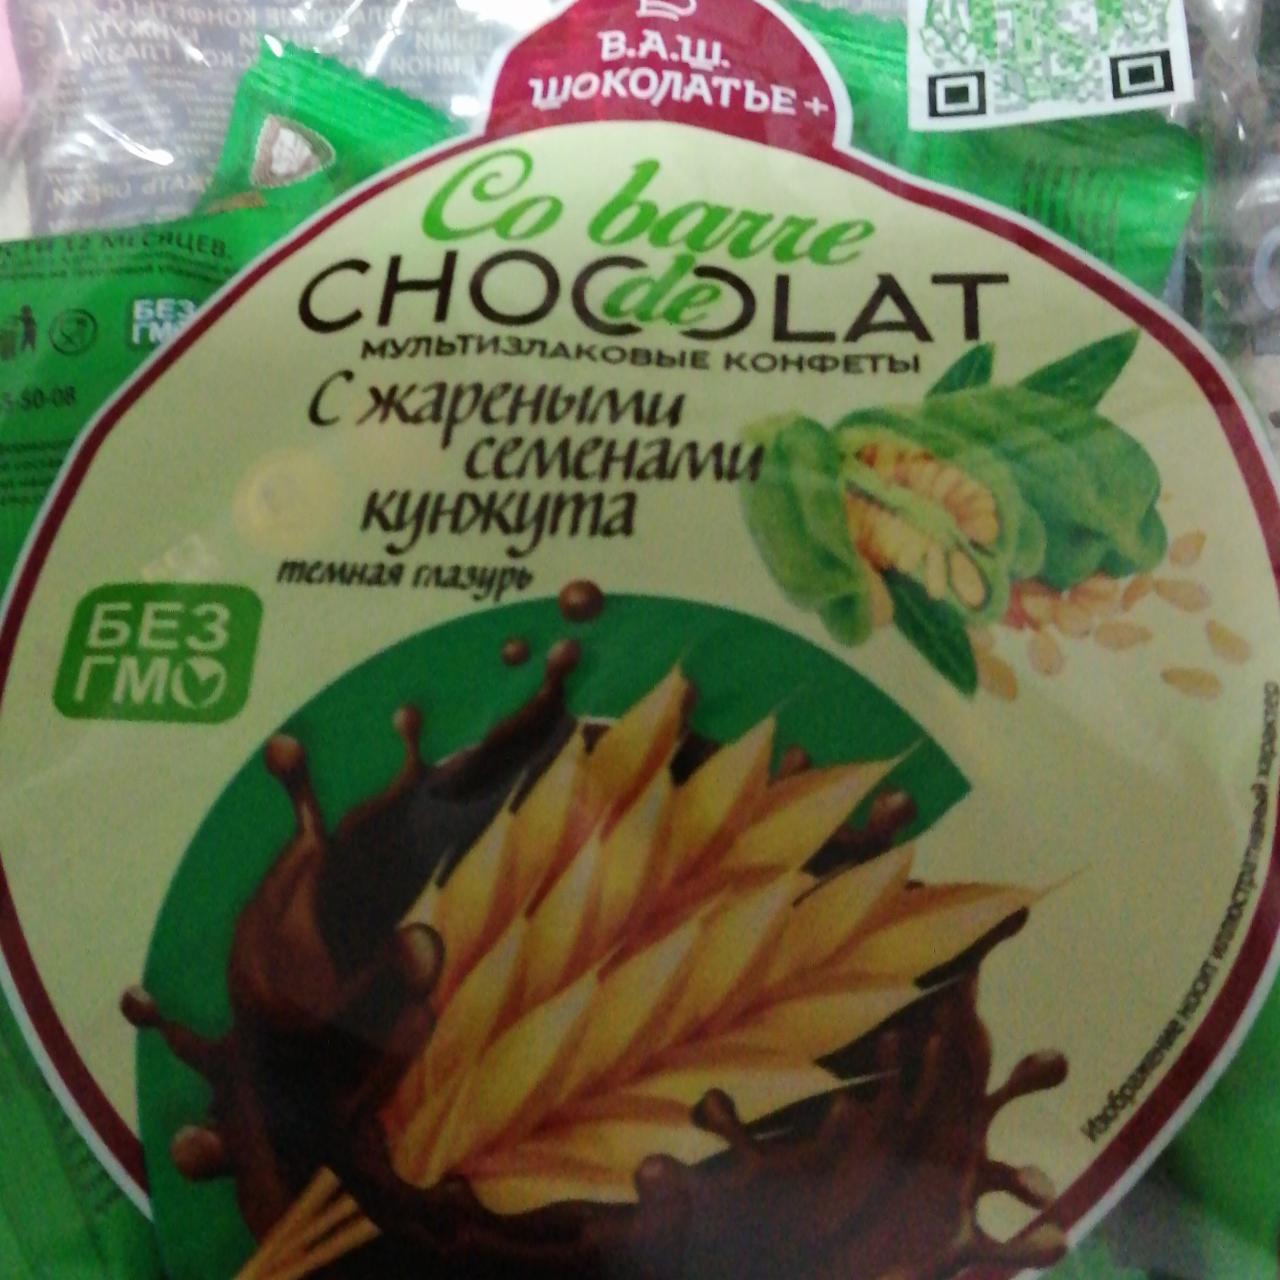 Фото - Мультизлаковый конфеты с кунжутом В.А.Ш. Шоколатье